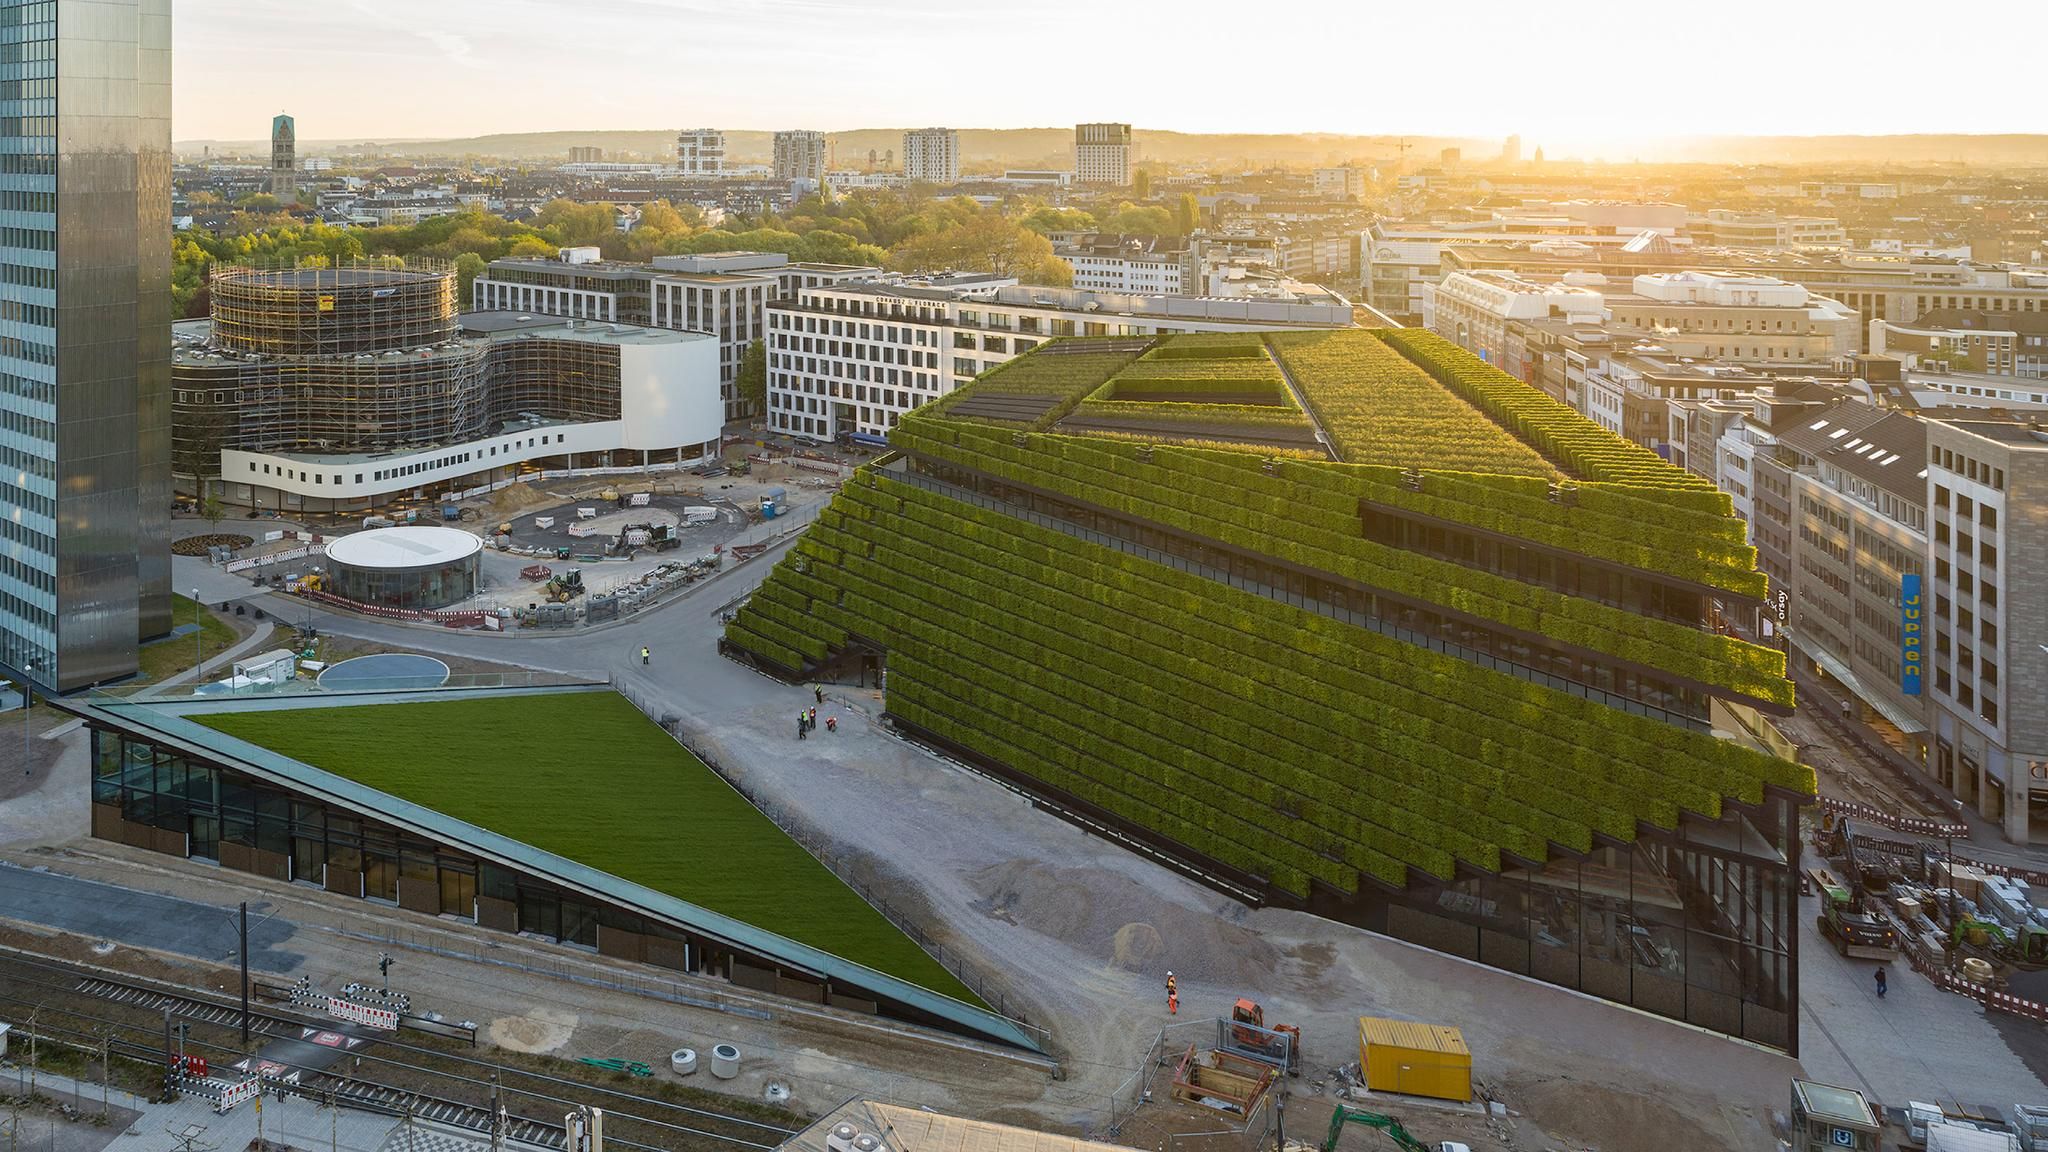 Düsseldorf office is clad in “Europe’s largest green façade”